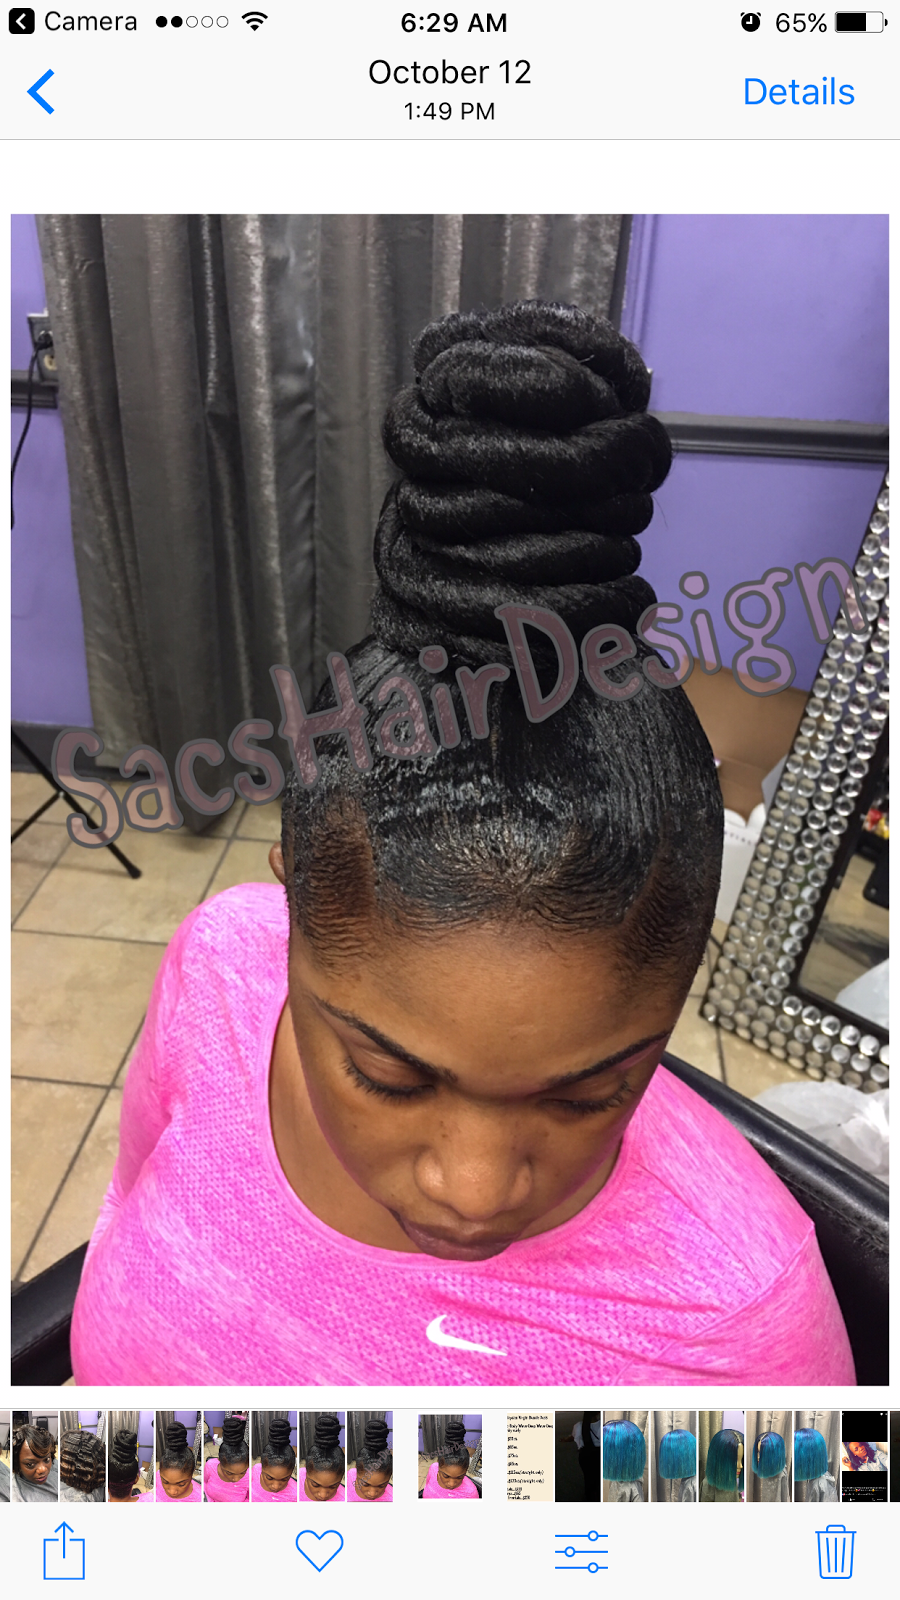 Sacs Hair Design | 446 E Raines Rd, Memphis, TN 38109, USA | Phone: (901) 649-1676